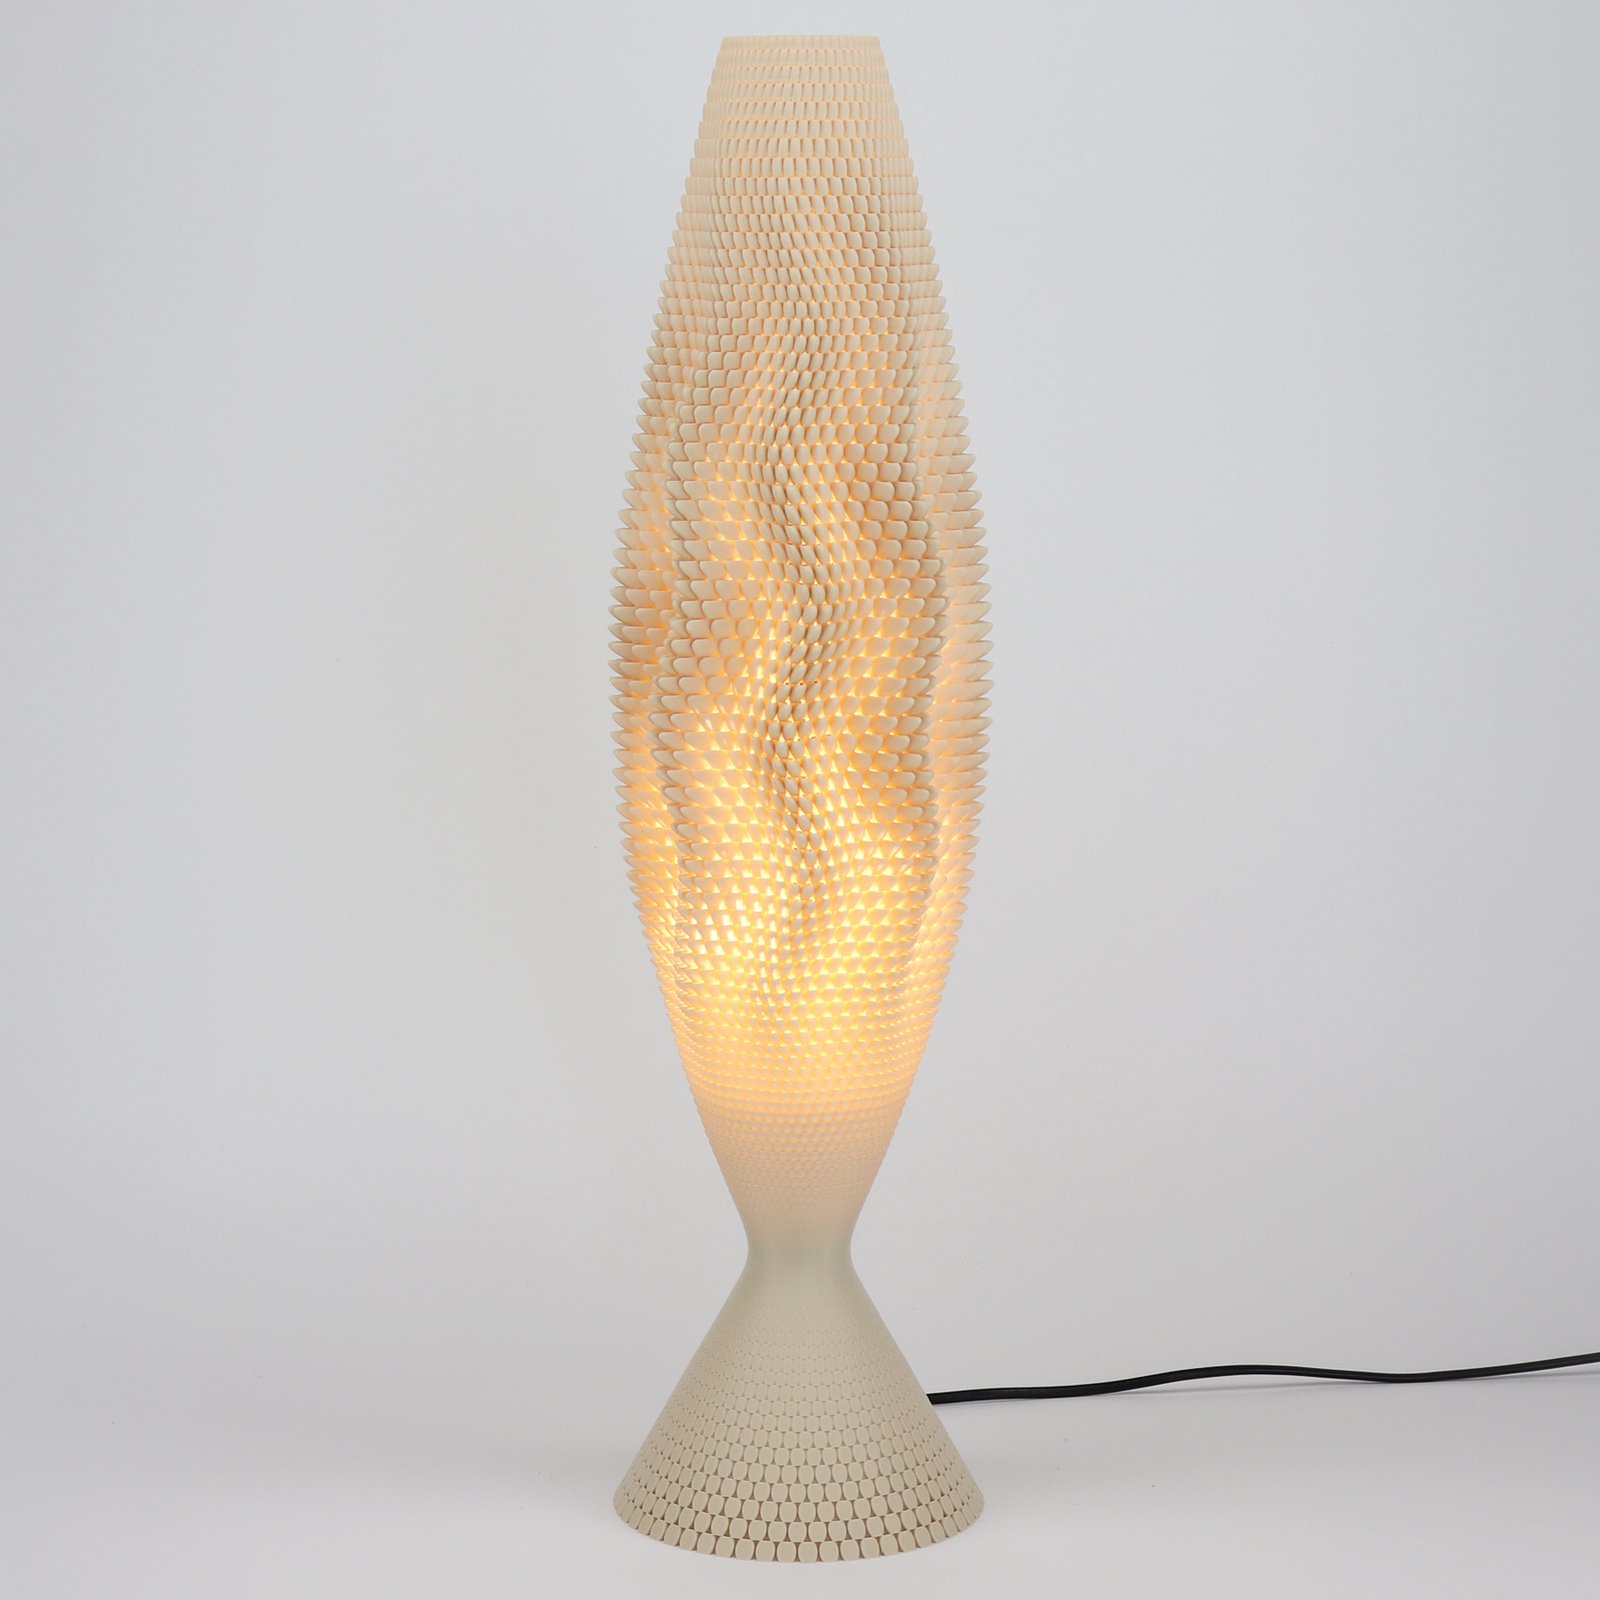 Stolná lampa Koral z organického materiálu, ľan, 65 cm